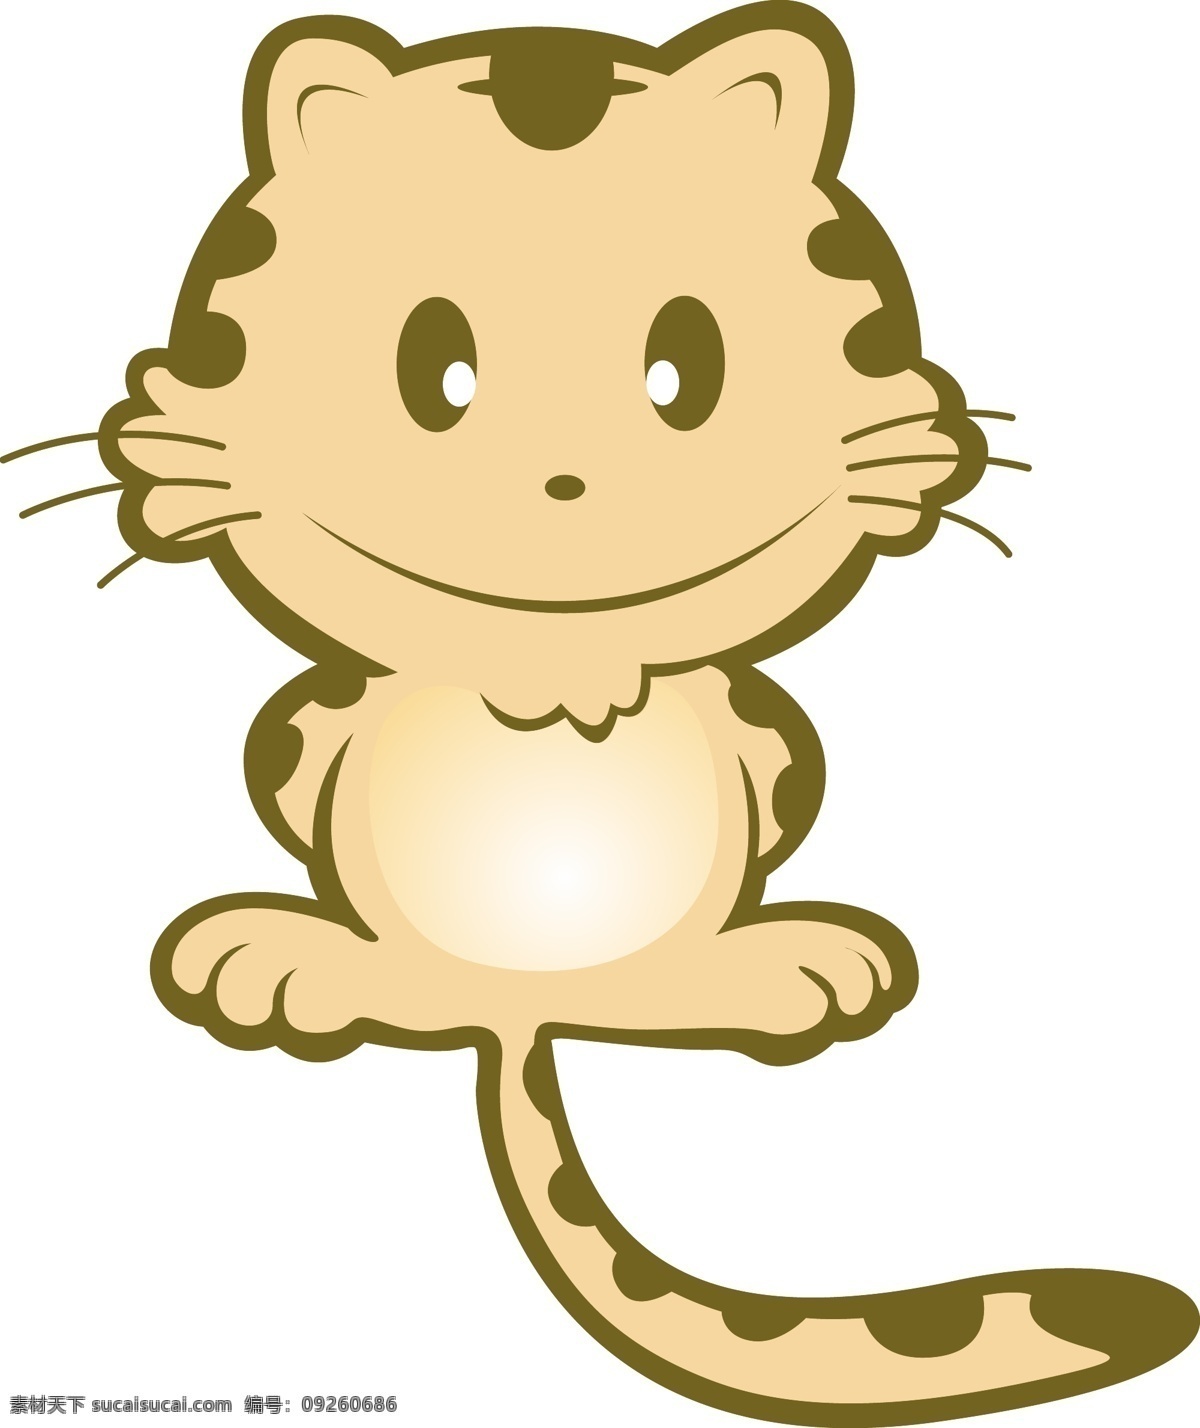 小猫 动物插画 其他矢量 矢量素材 矢量图库 小猫ai格式 插画集